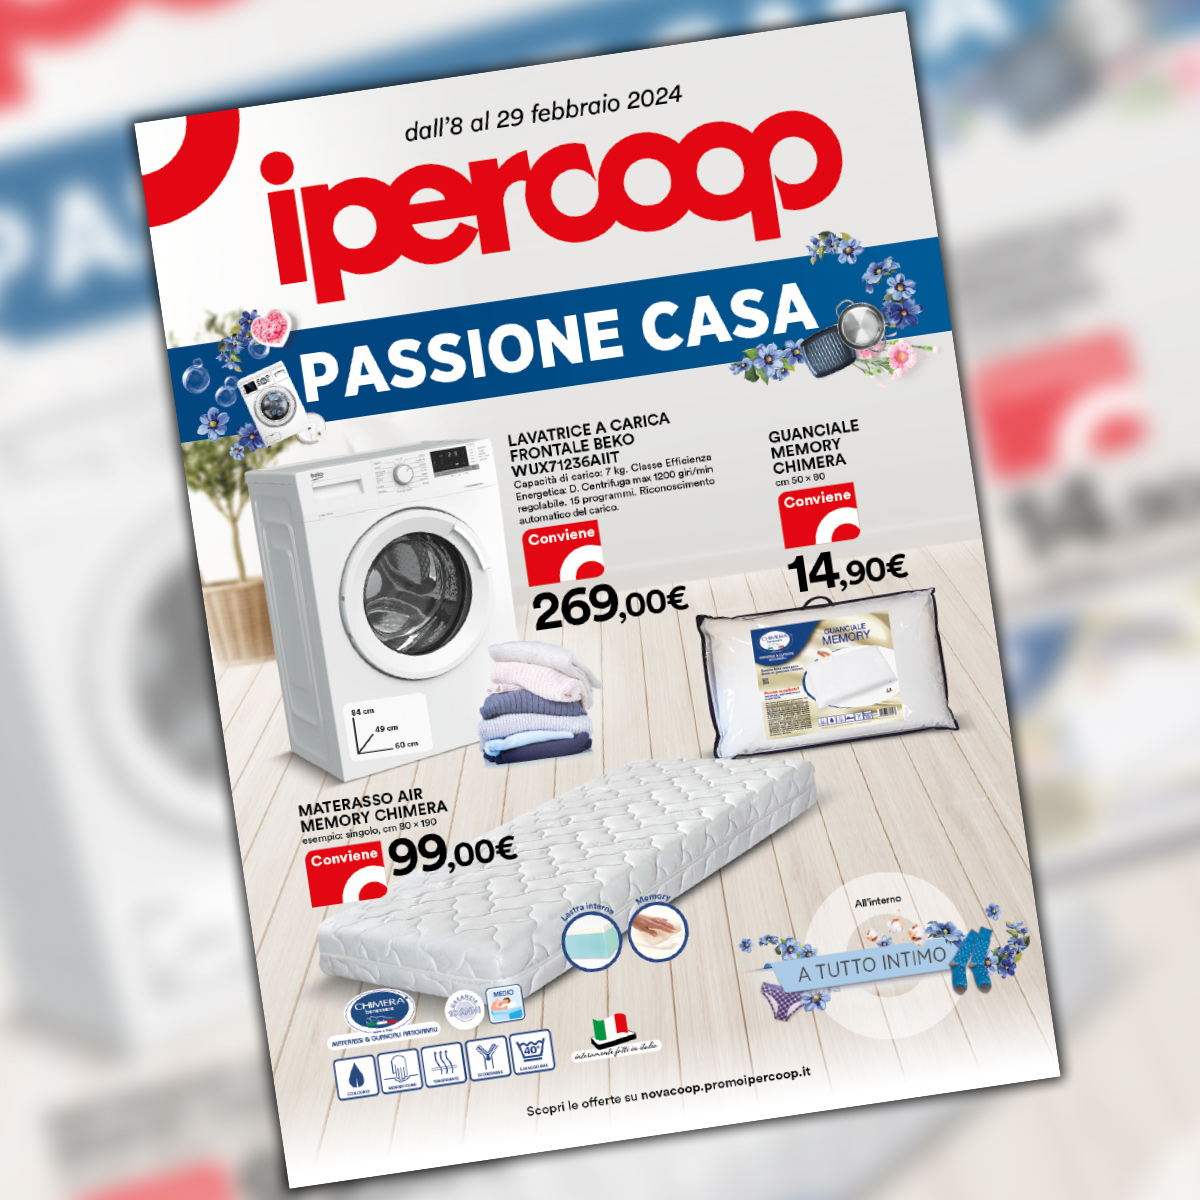 Ipercoop – Passione Casa